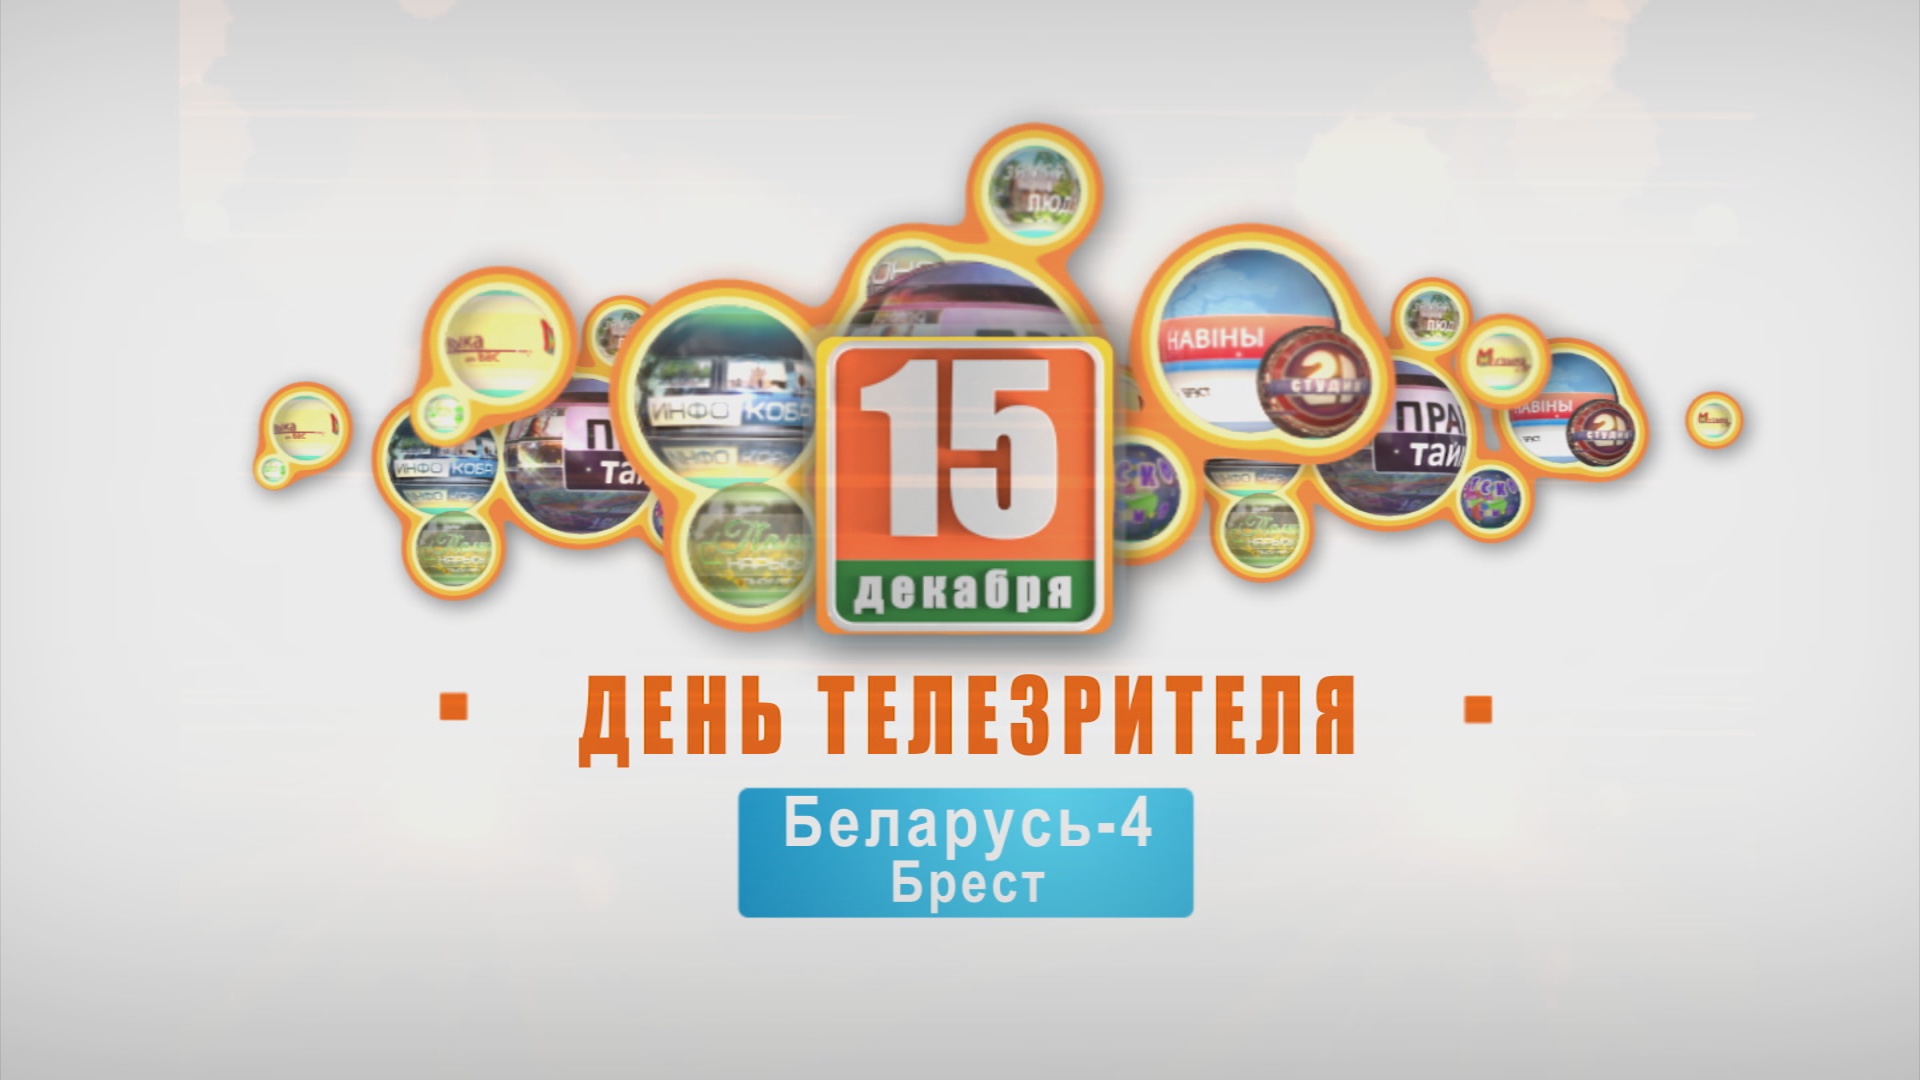 Телемарафон "День телезрителя". 3 года. 15-12-18 (часть 1)